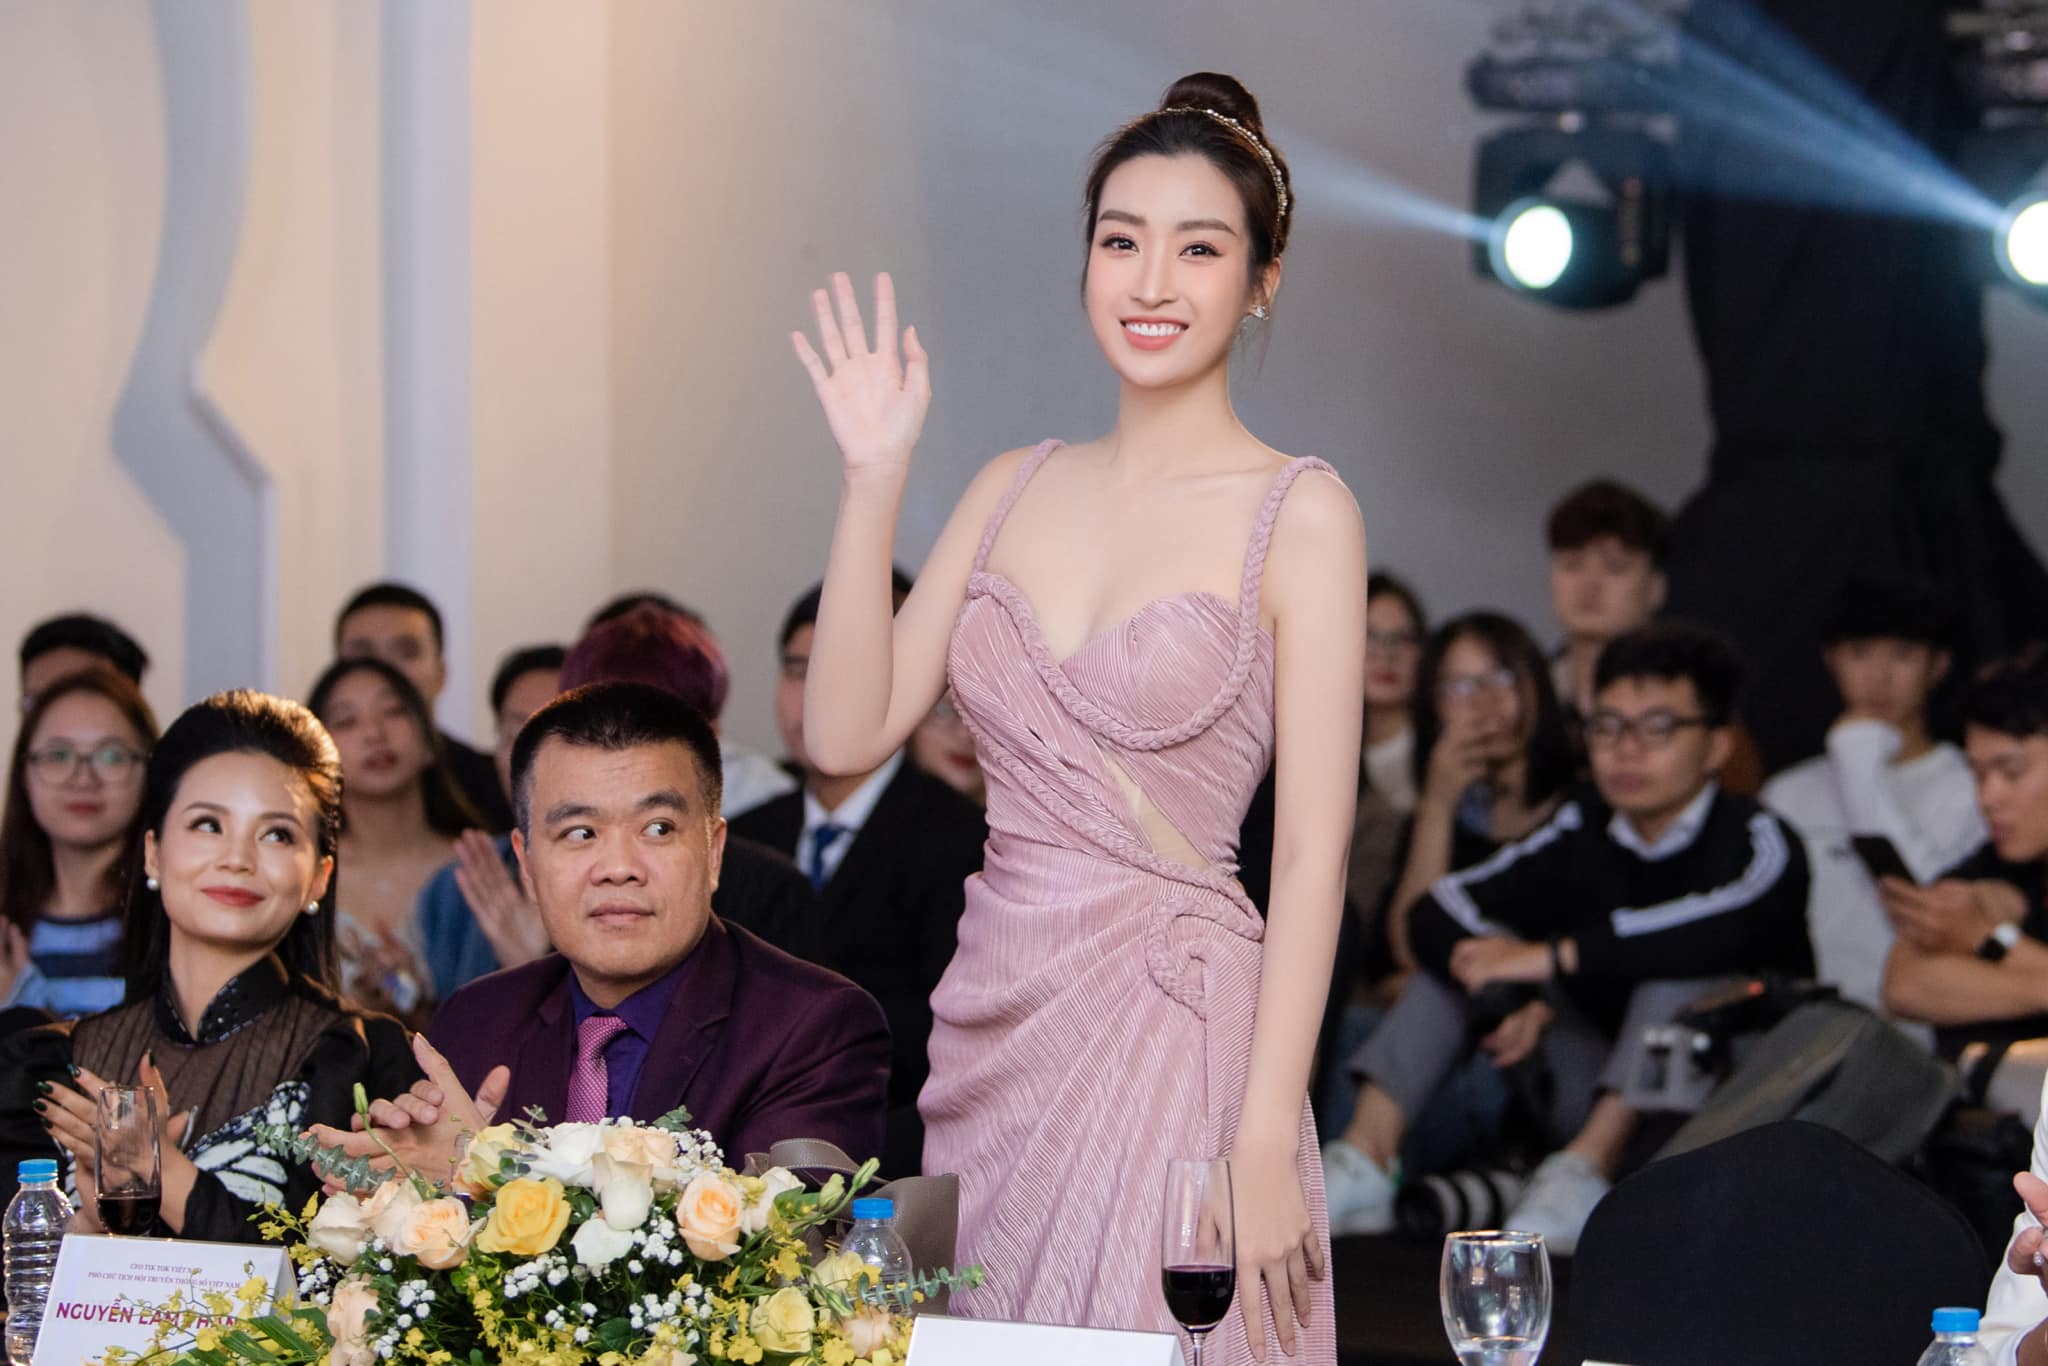 Nàng hậu Đỗ Mỹ Linh khiến fan 'đứng hình' khi hóa nàng thơ gợi cảm trong loạt ảnh mới 4